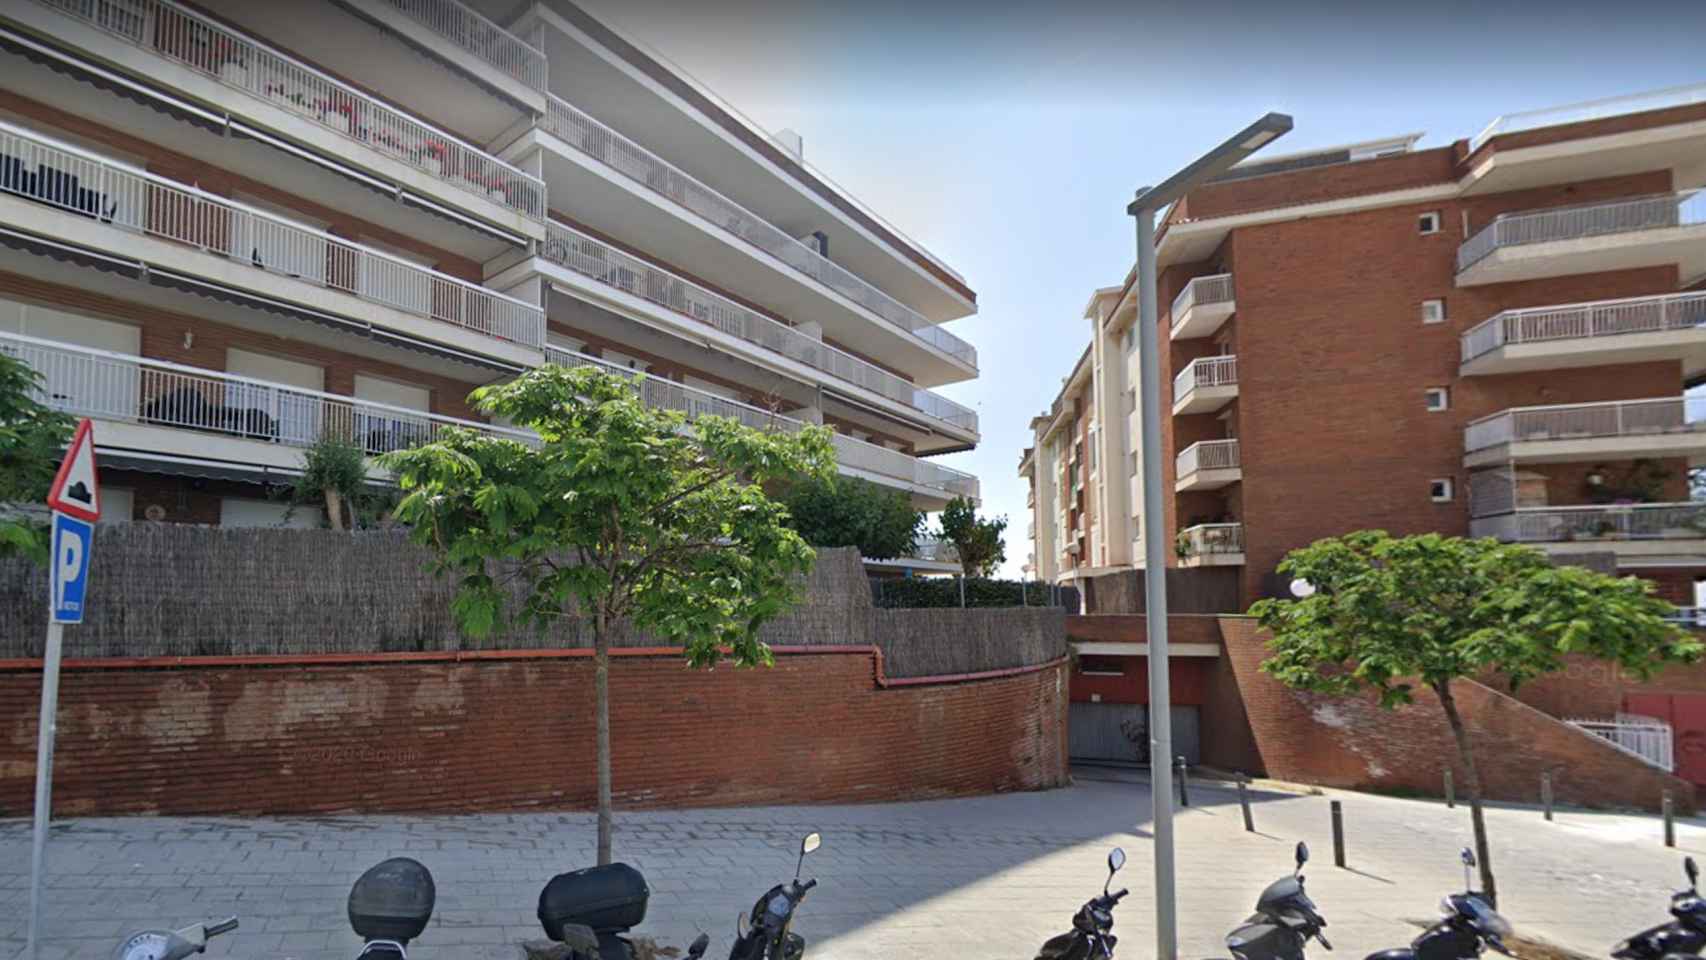 Edificios del camino del Pla de la Torreta, en Sant Andreu de Llavaneres, Barcelona, donde se ha incendiado la casa de una familia / GOOGLE MAPS